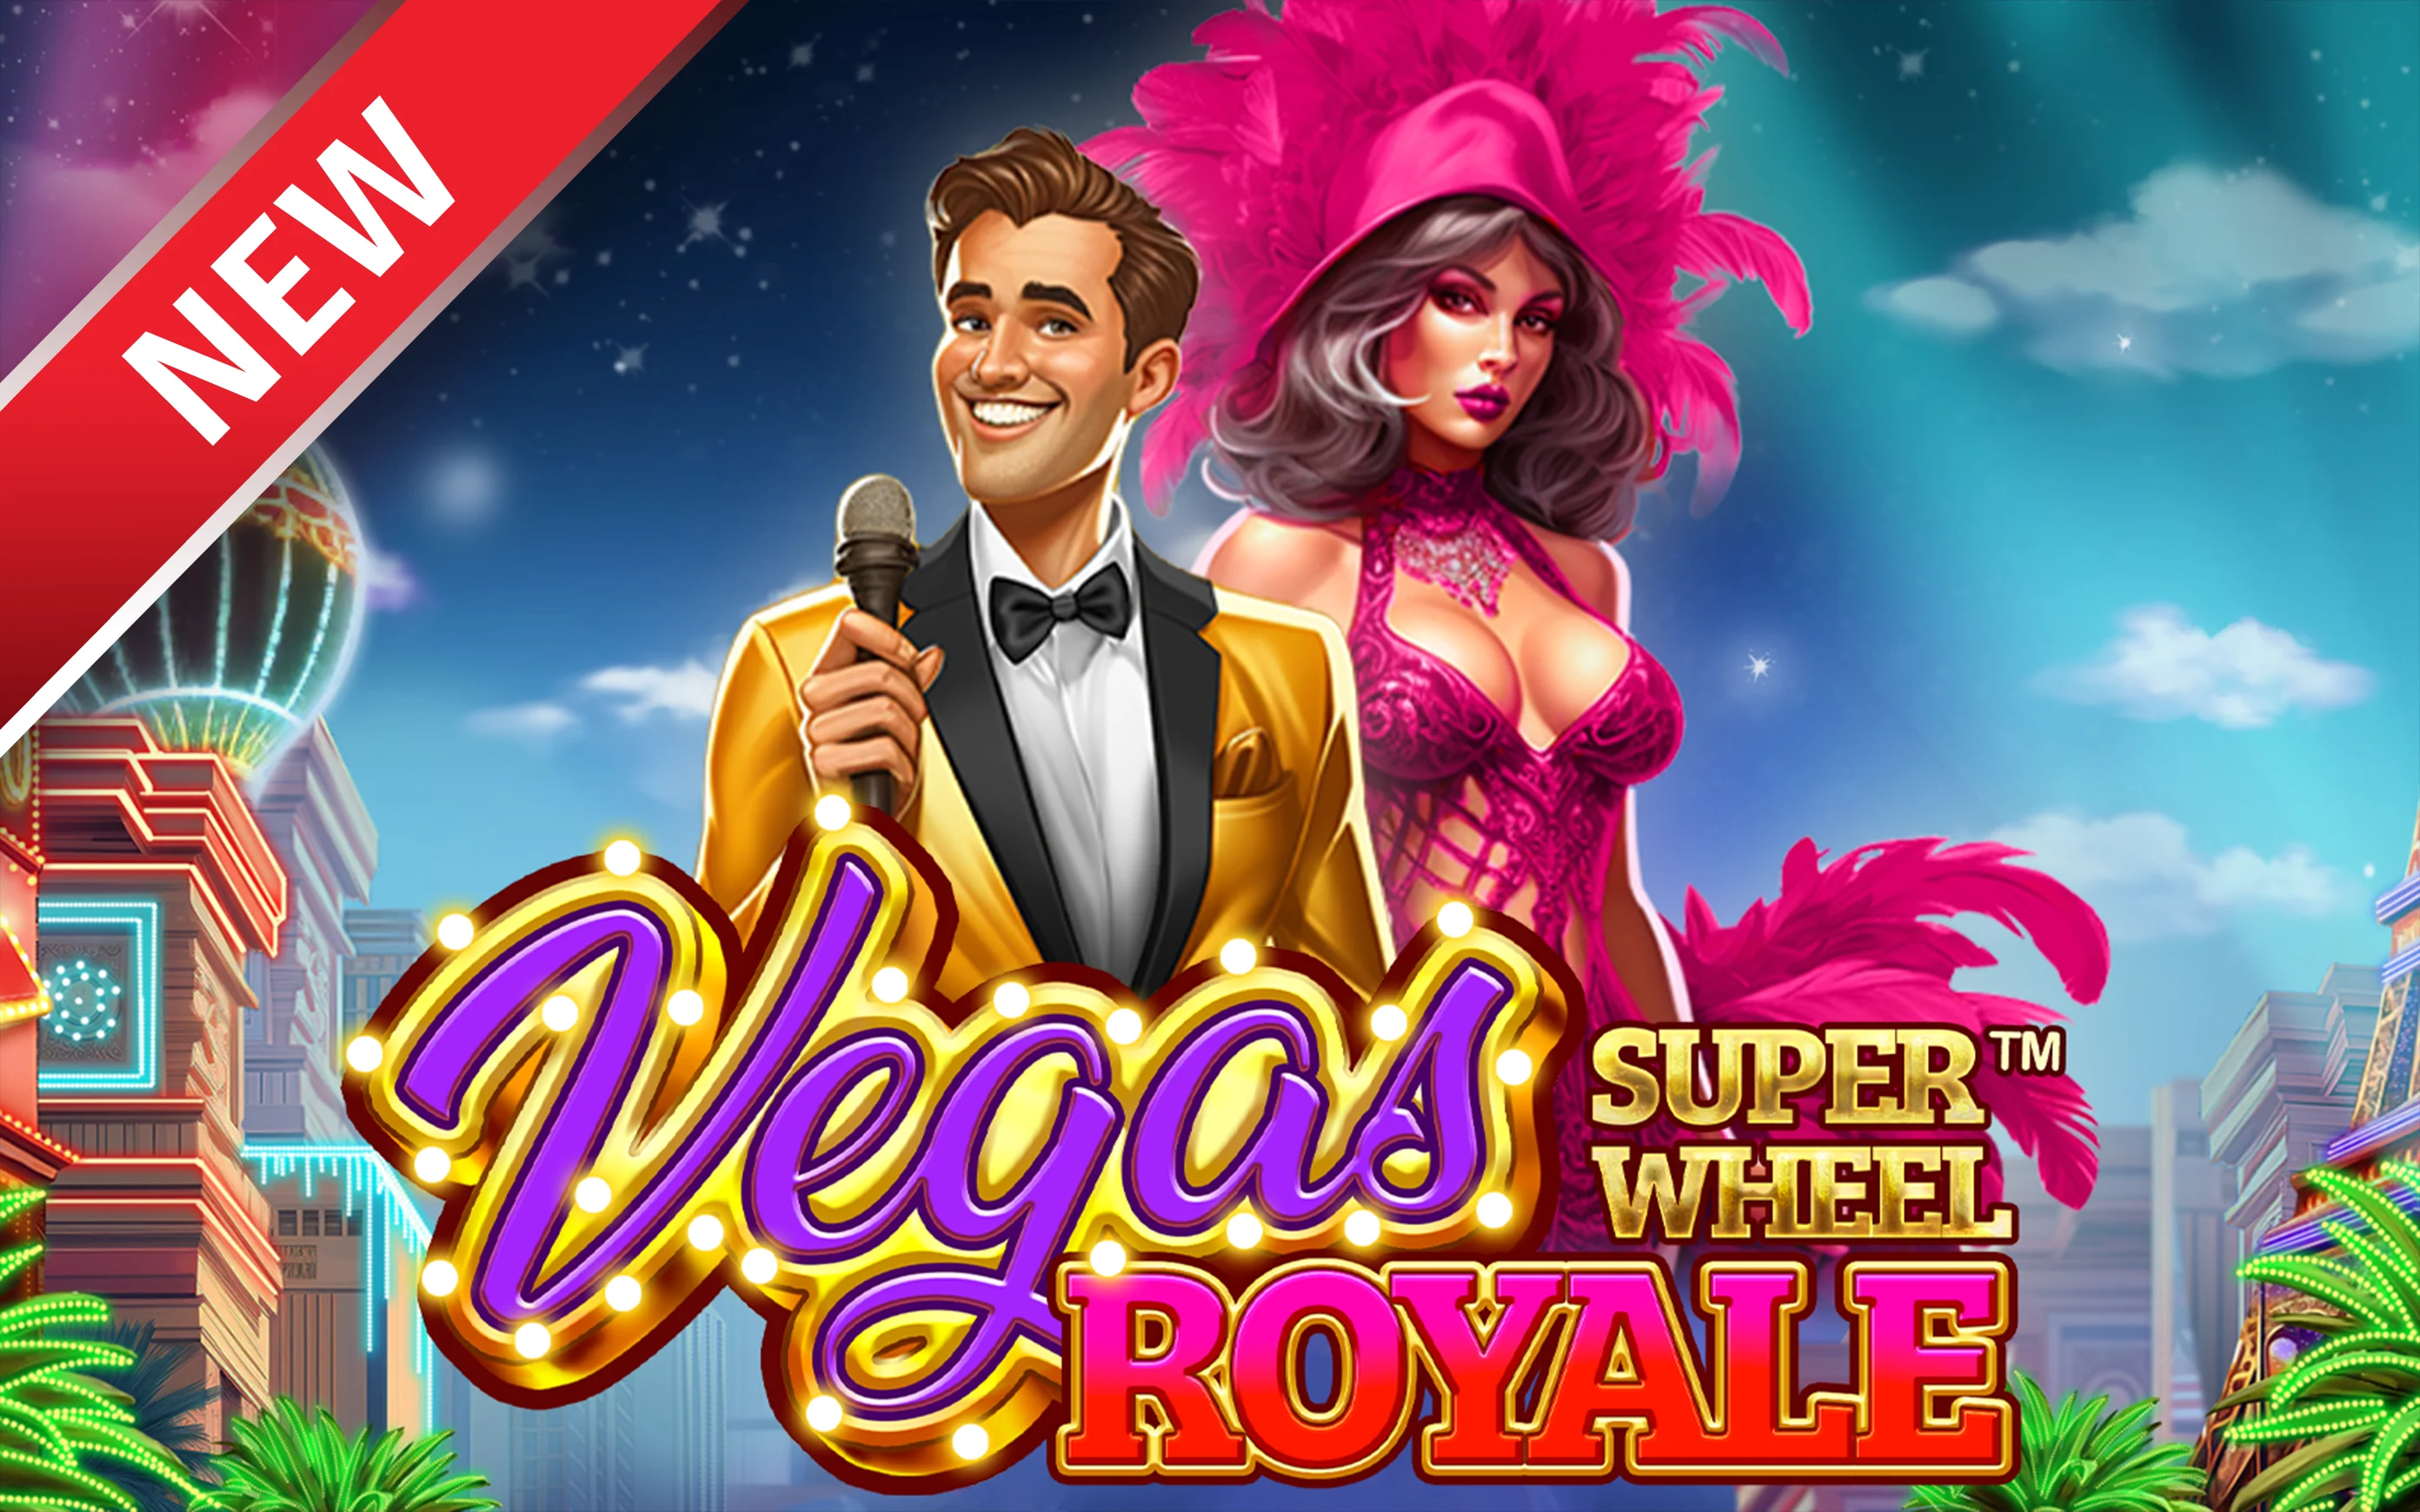 Juega a Vegas Royale Super Wheel™ en el casino en línea de Starcasino.be